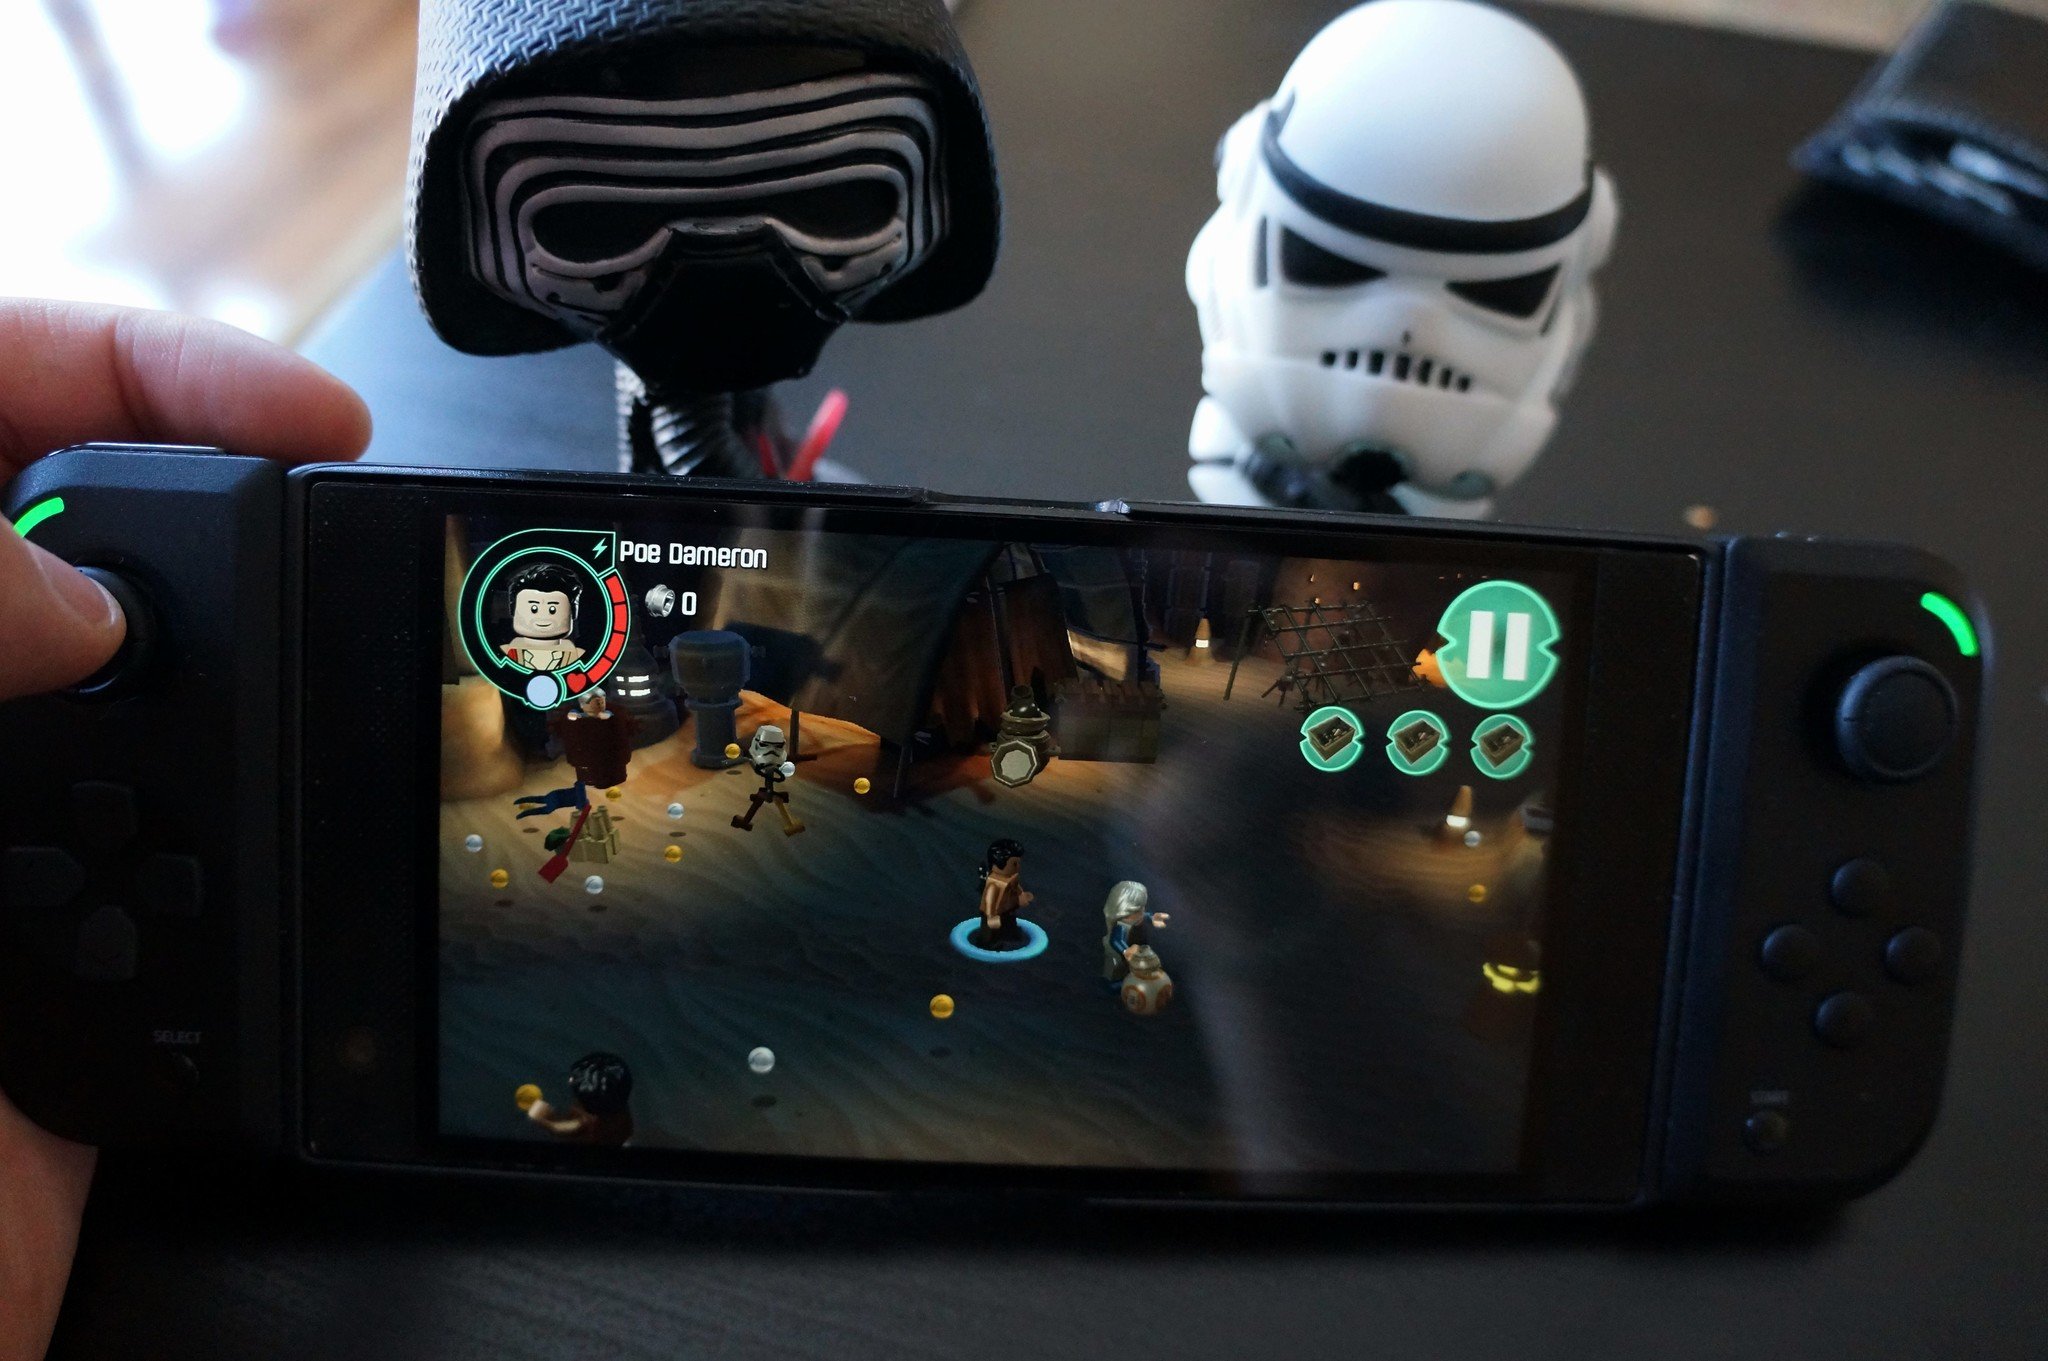 Os melhores jogos de Star Wars para Android e iOS - TecMundo